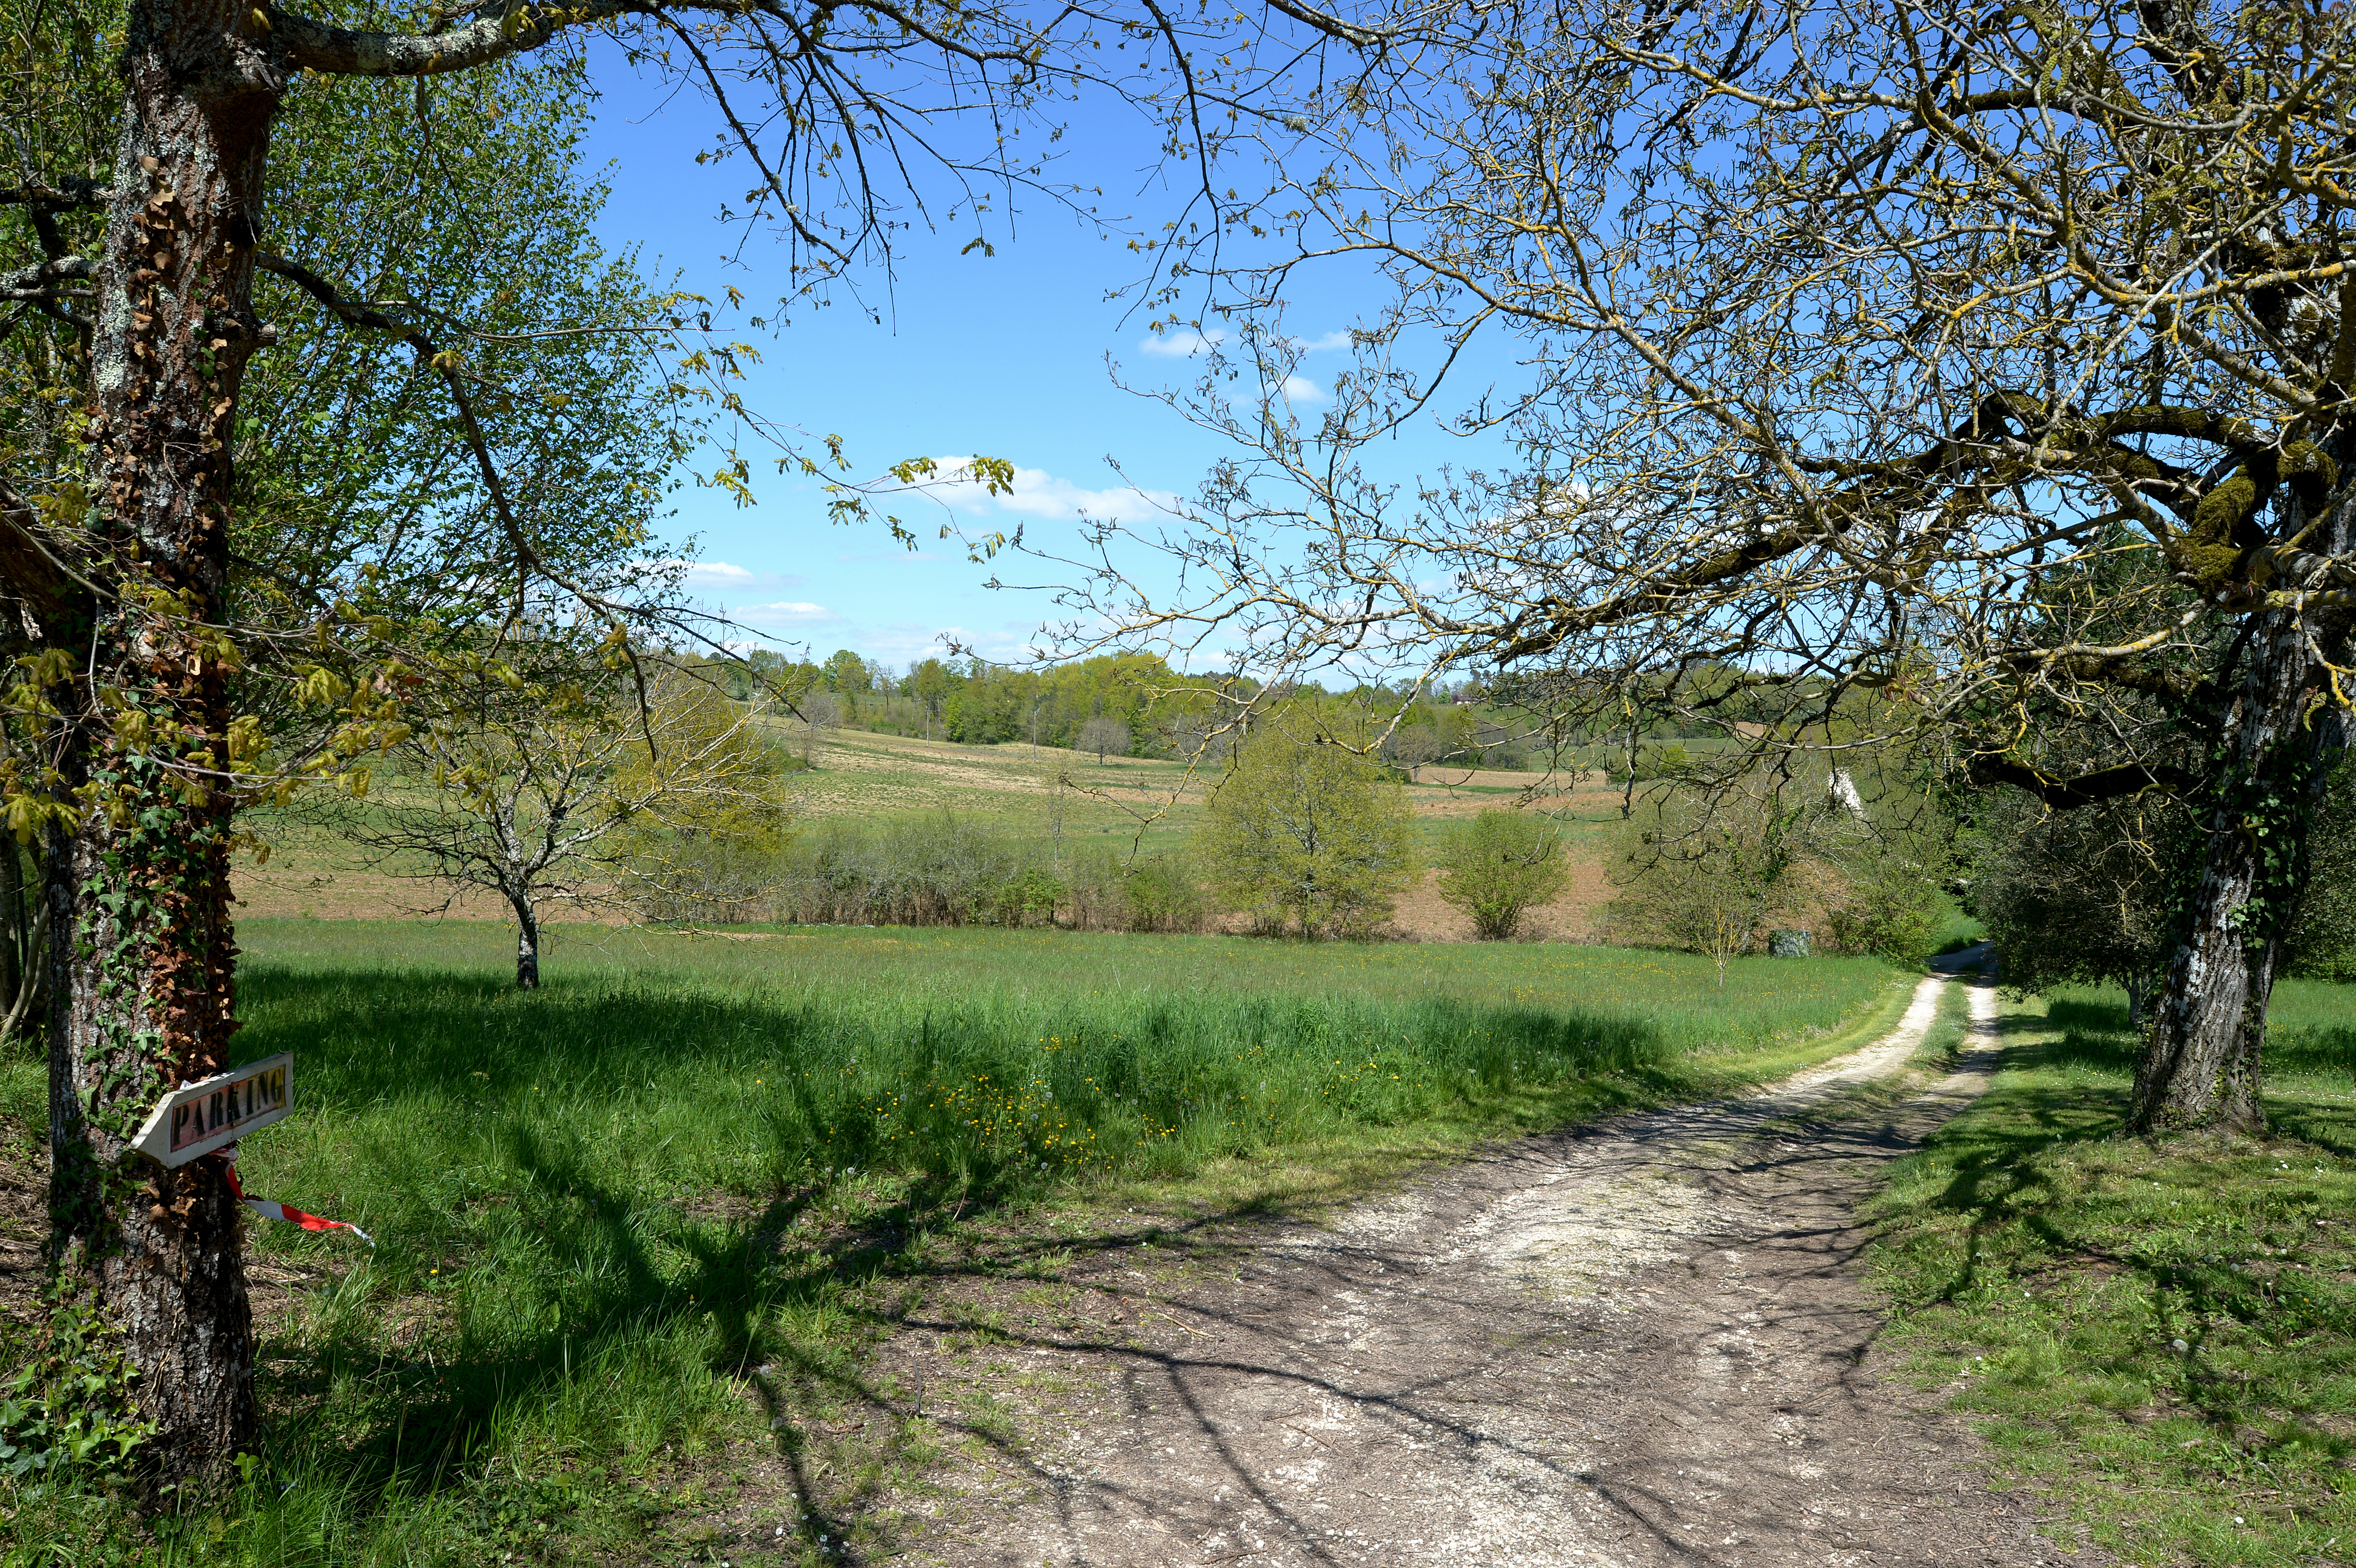 Le chemin qui mêne au gite donne sur un sentier de randonnée dans la campagne.